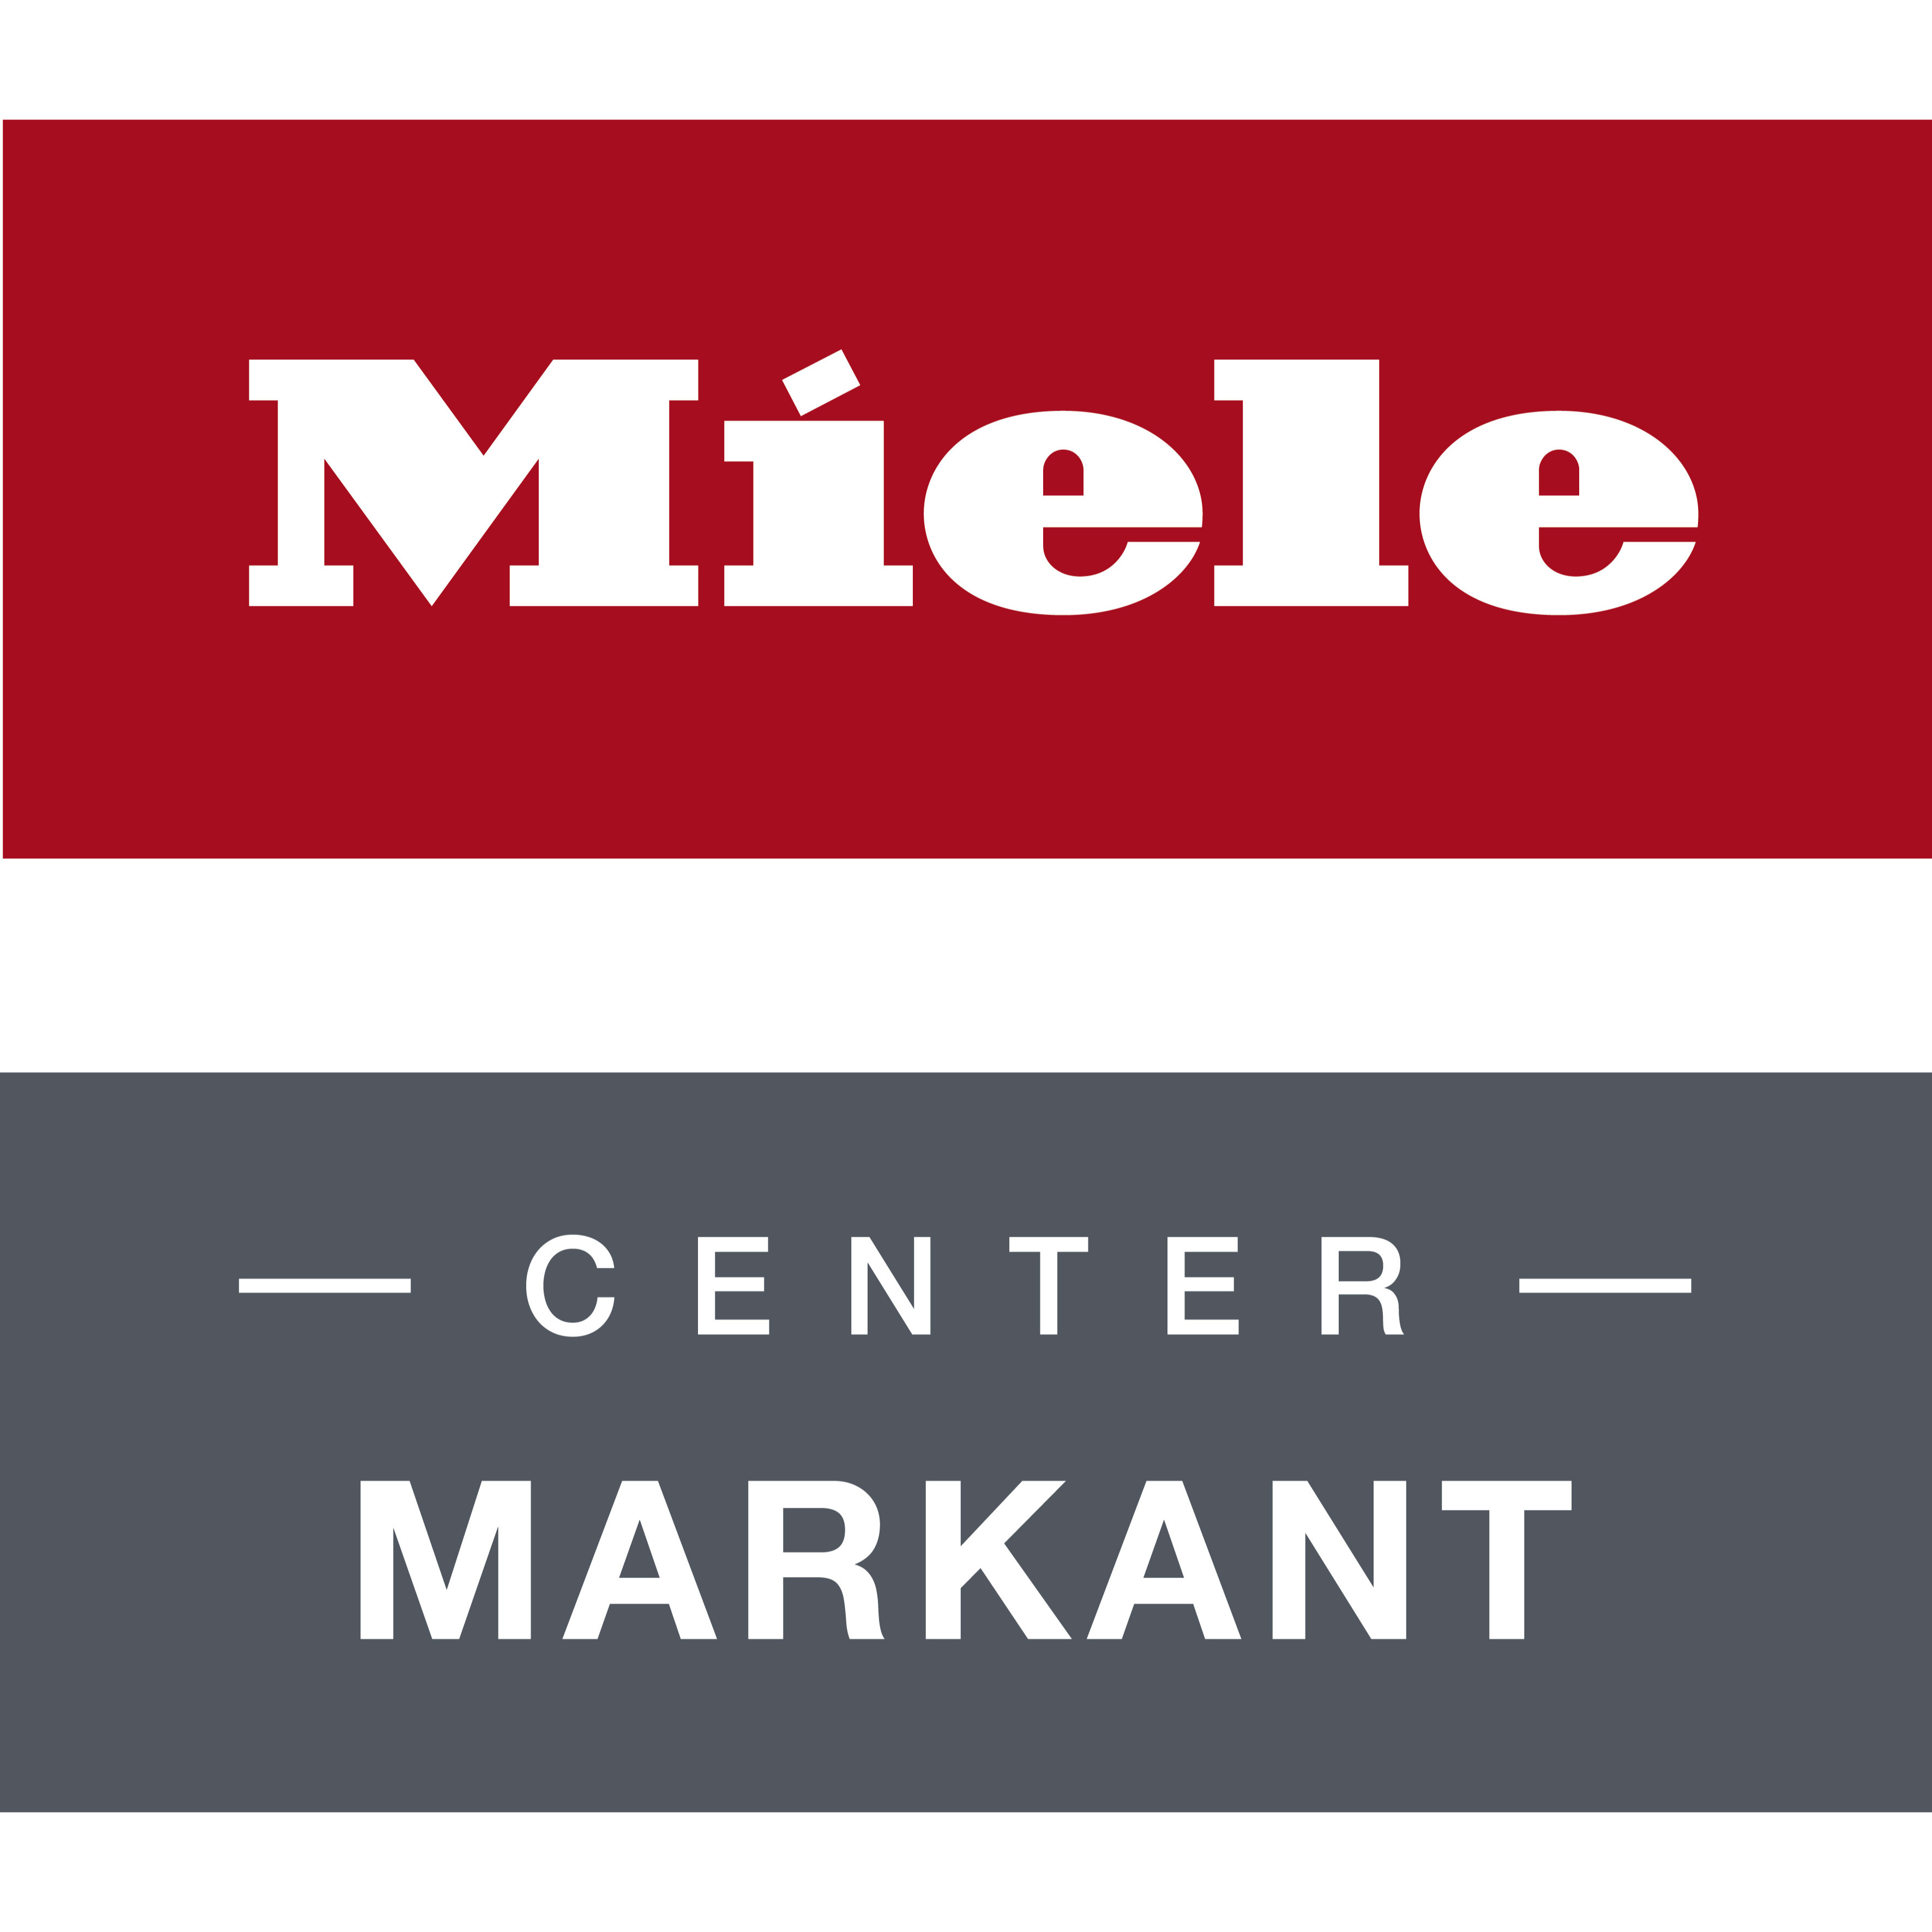 Miele Center Markant das Kompetenzzentrum der Marke Miele in Dornbirn.